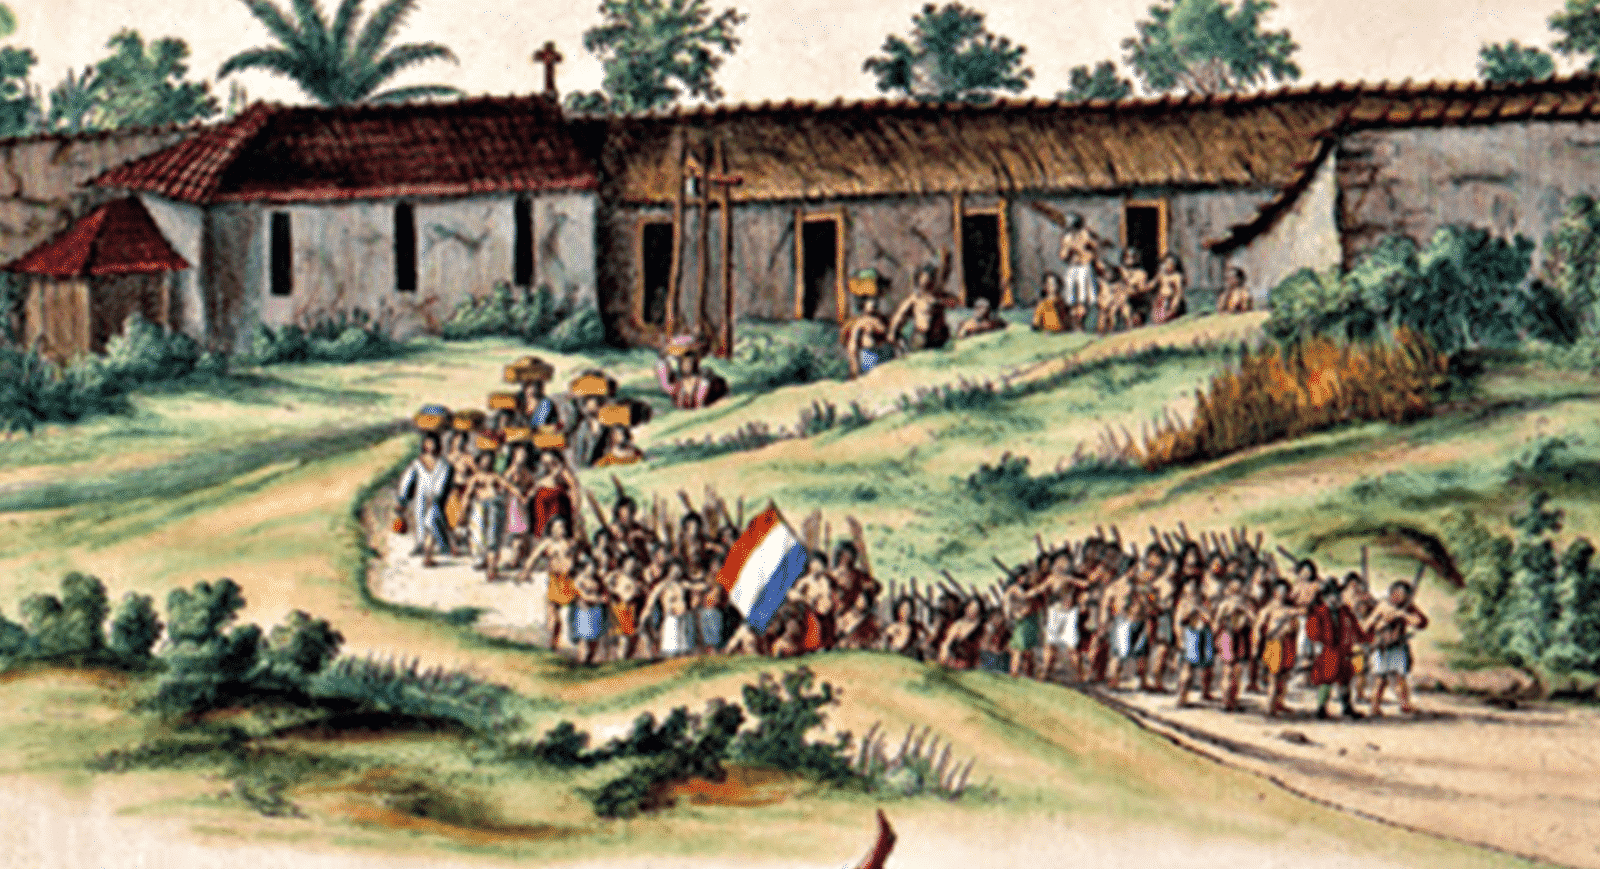 Invasões Holandesas - História, invasões no Brasil e consequências